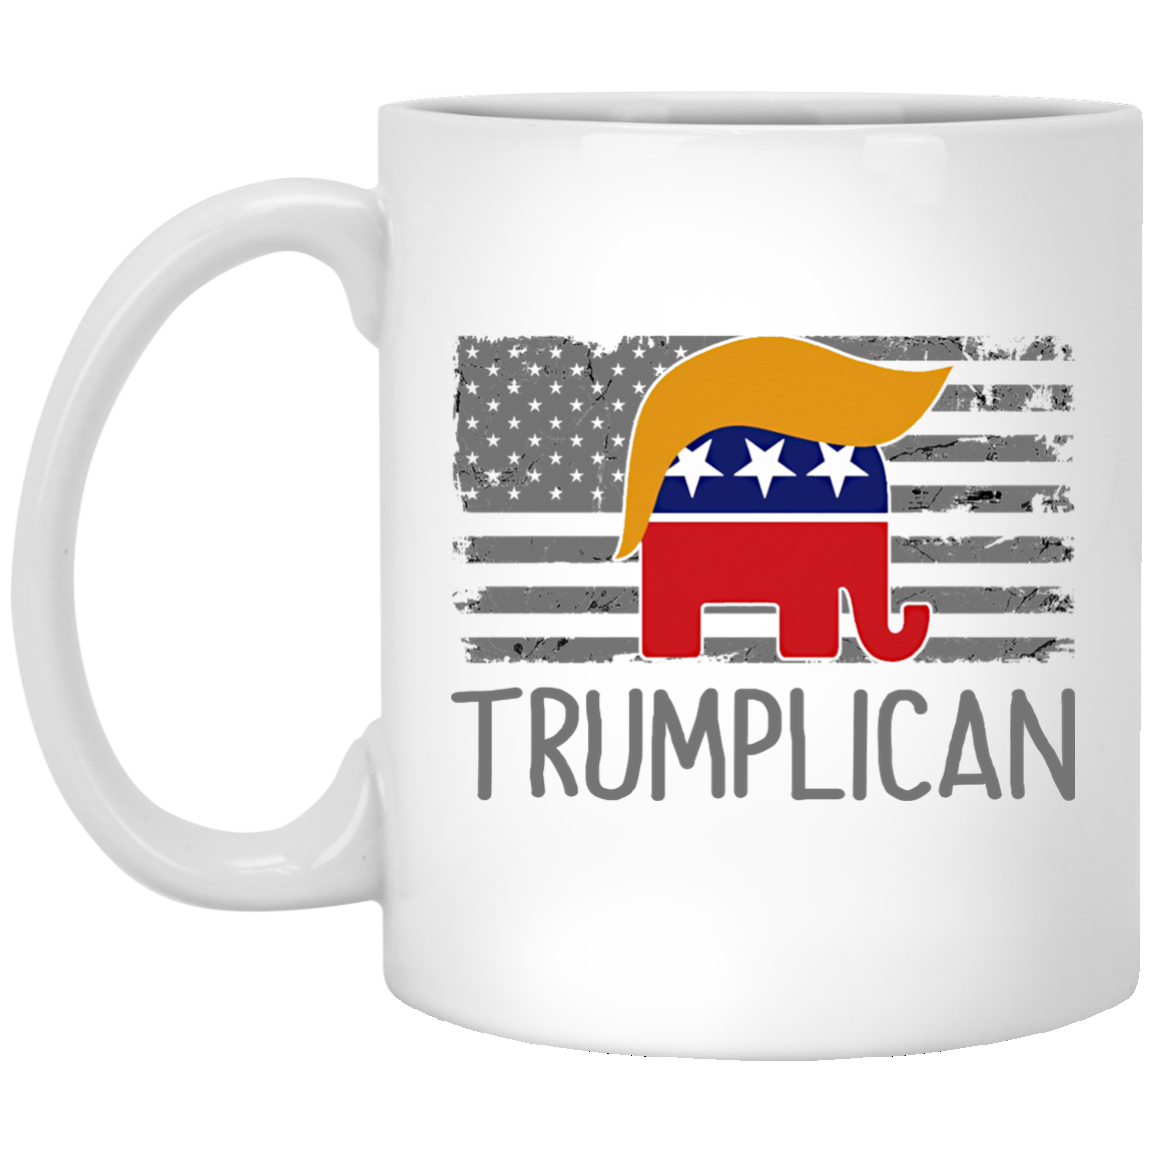 Trumplican Mugs